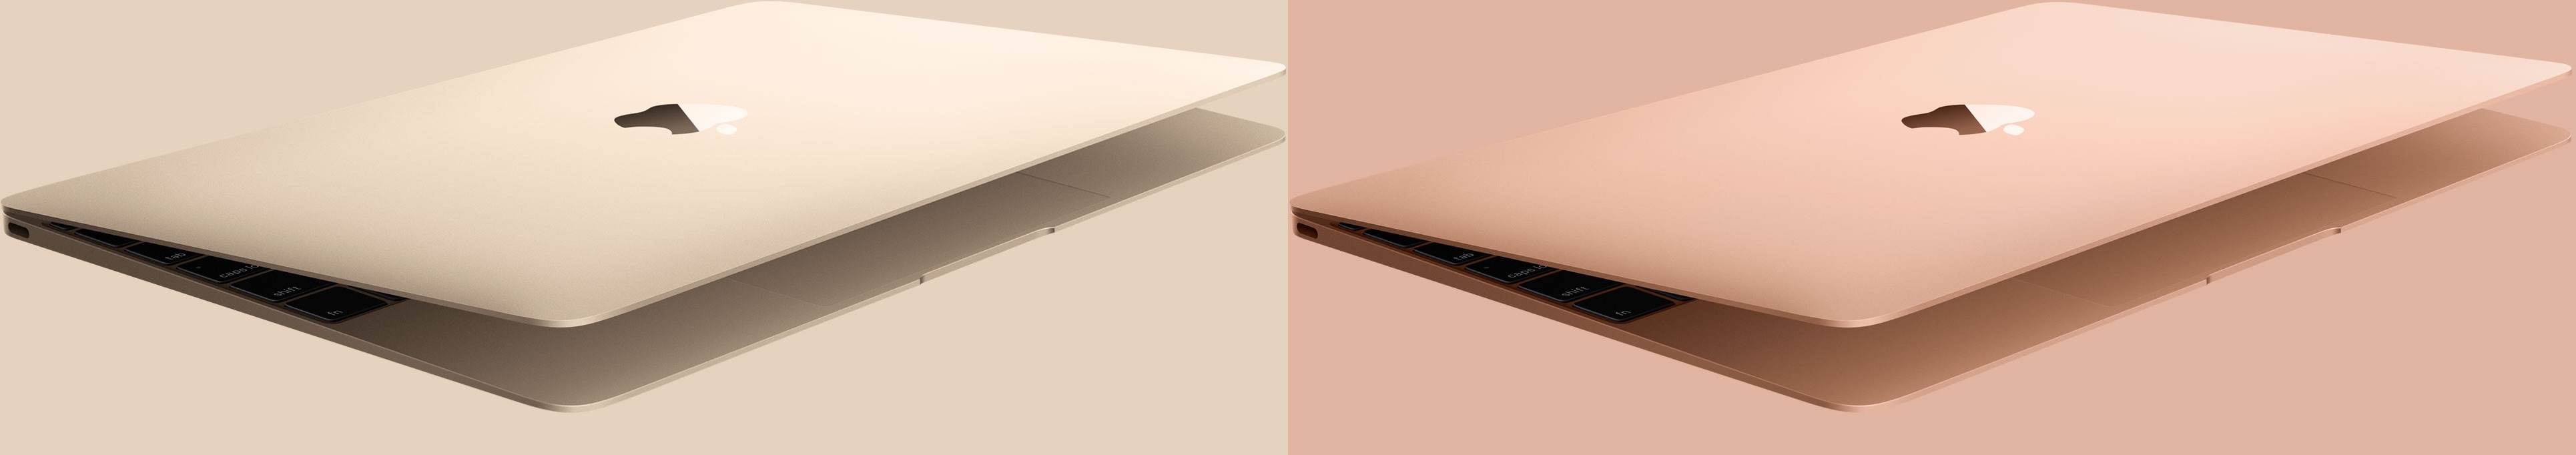 Golden MacBook (vana vs. uus)